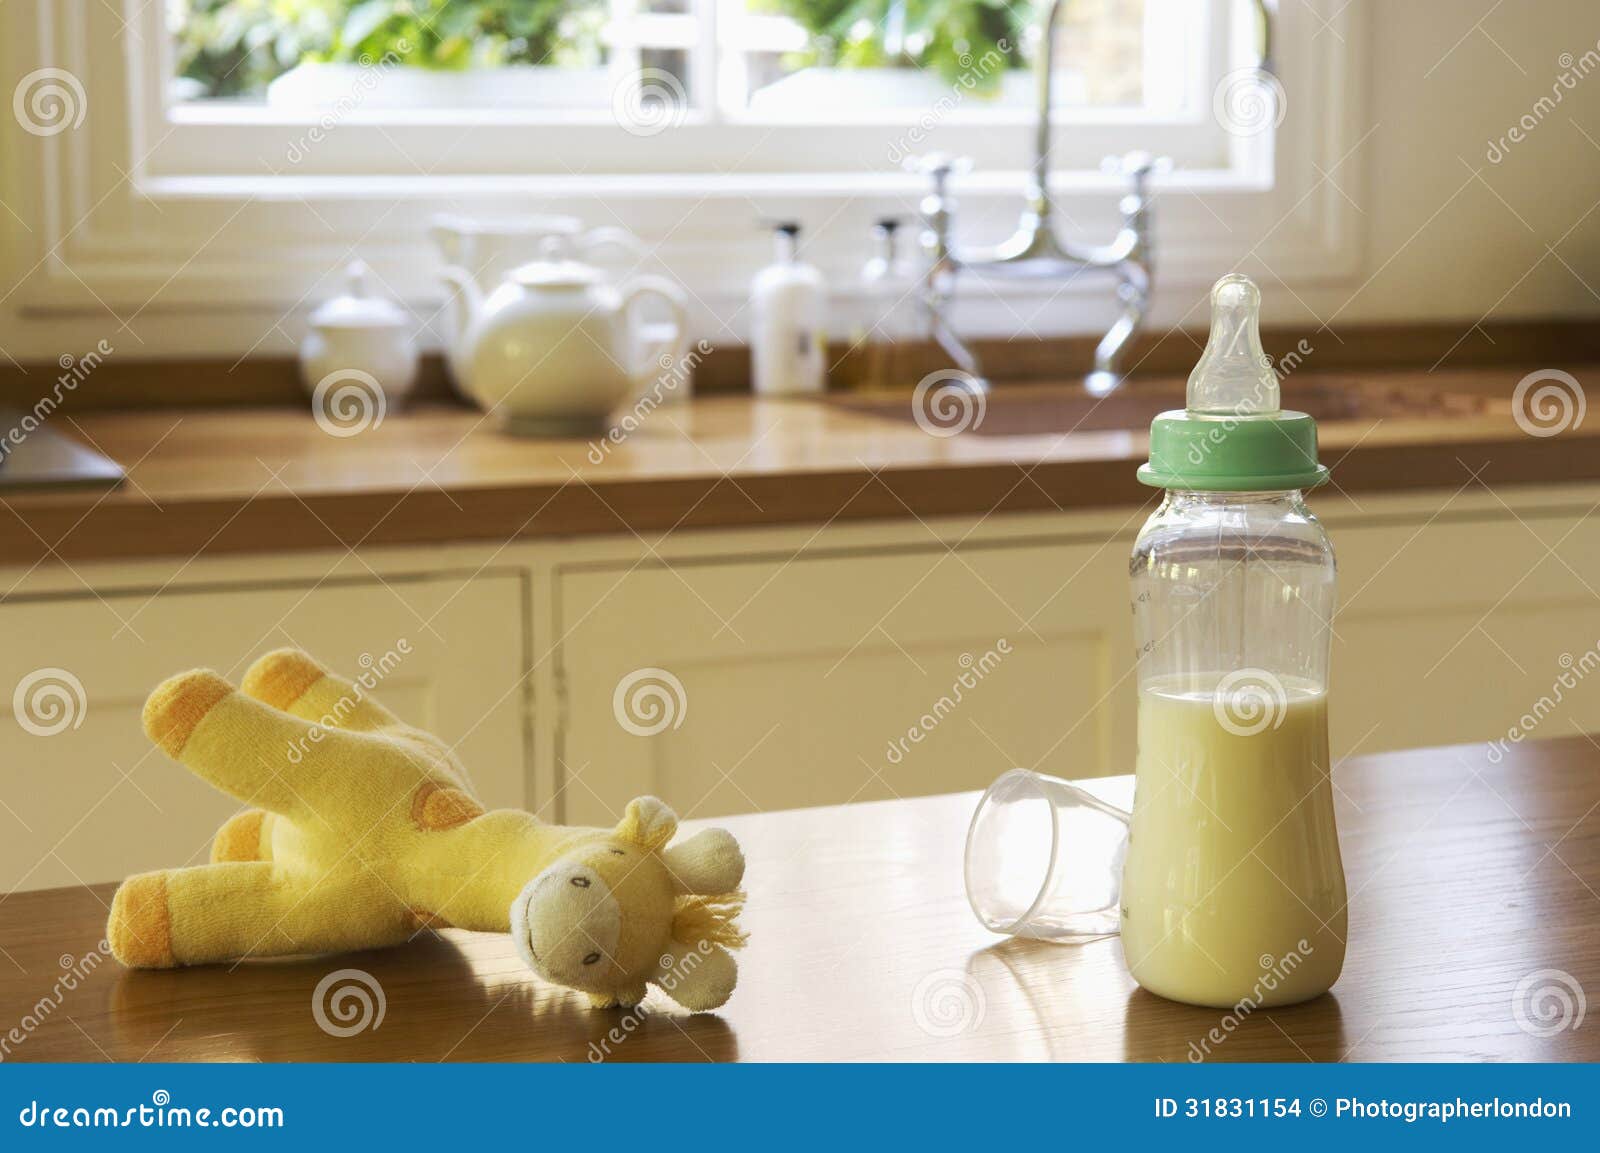 Animale Farcito E Biberon Sul Contatore Di Cucina Fotografia Stock -  Immagine di apparecchiatura, latte: 31831154